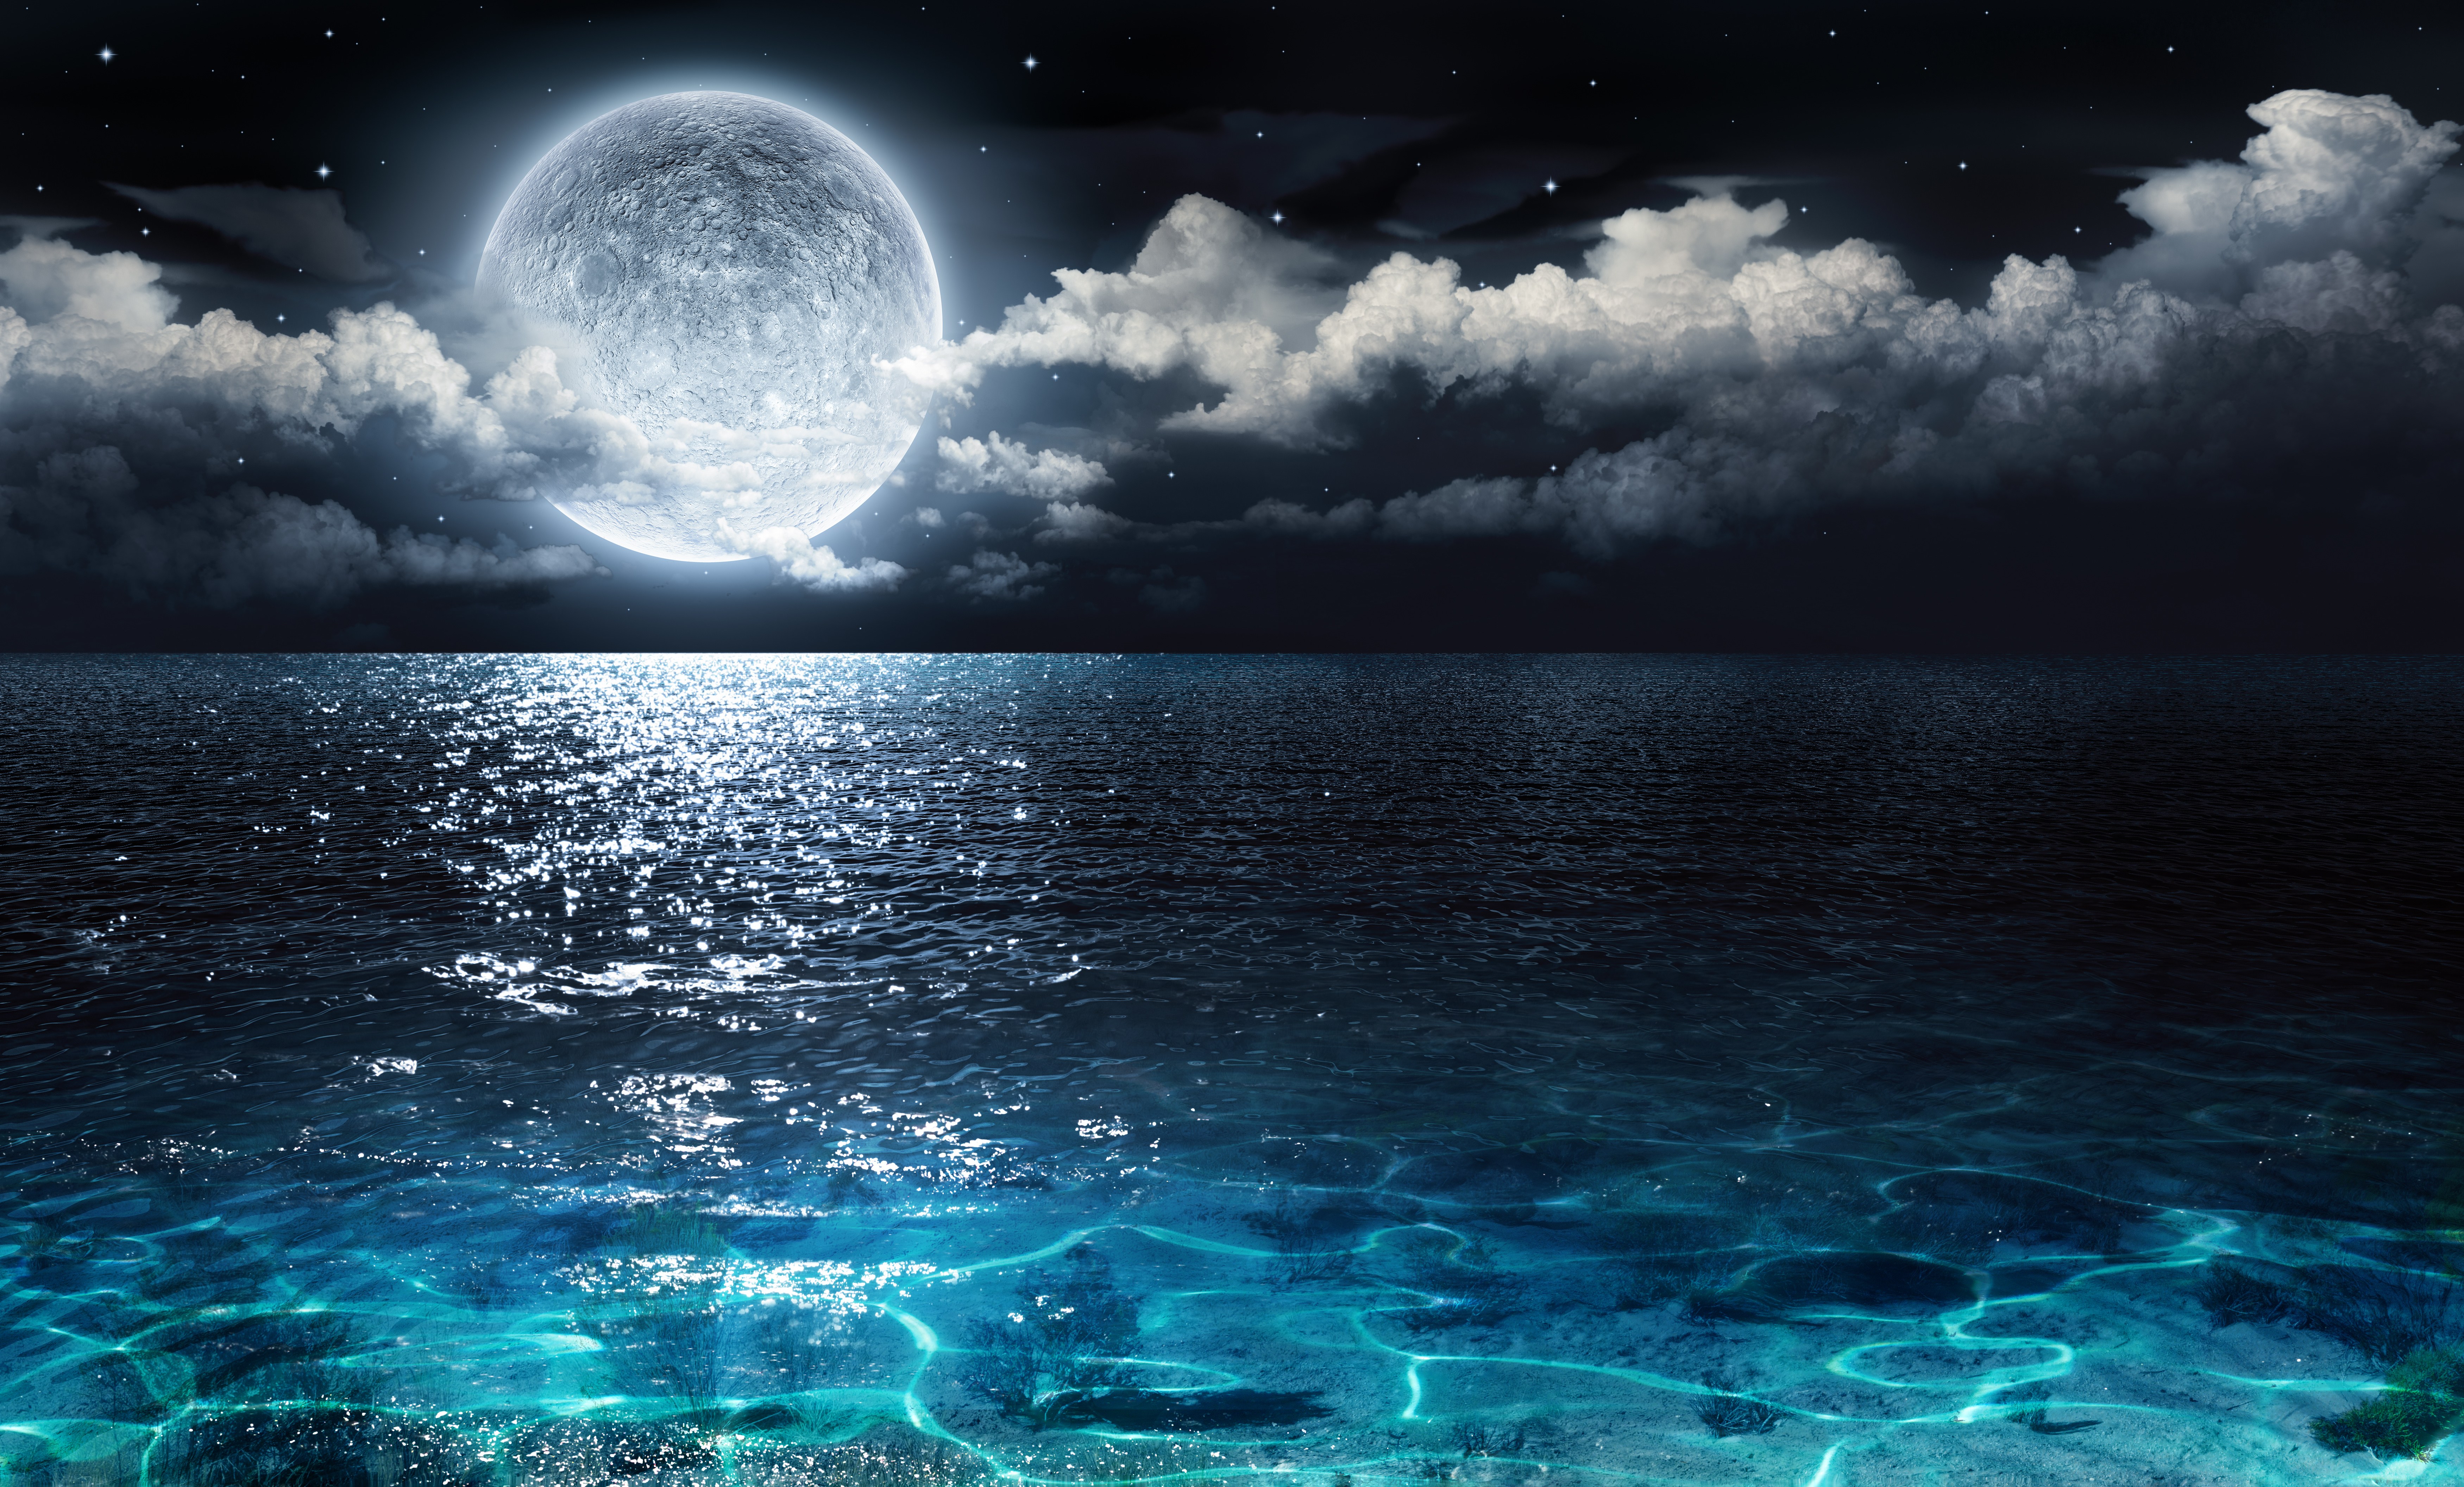 Скачать обои бесплатно Море, Ночь, Облака, Луна, Океан, Земля/природа картинка на рабочий стол ПК